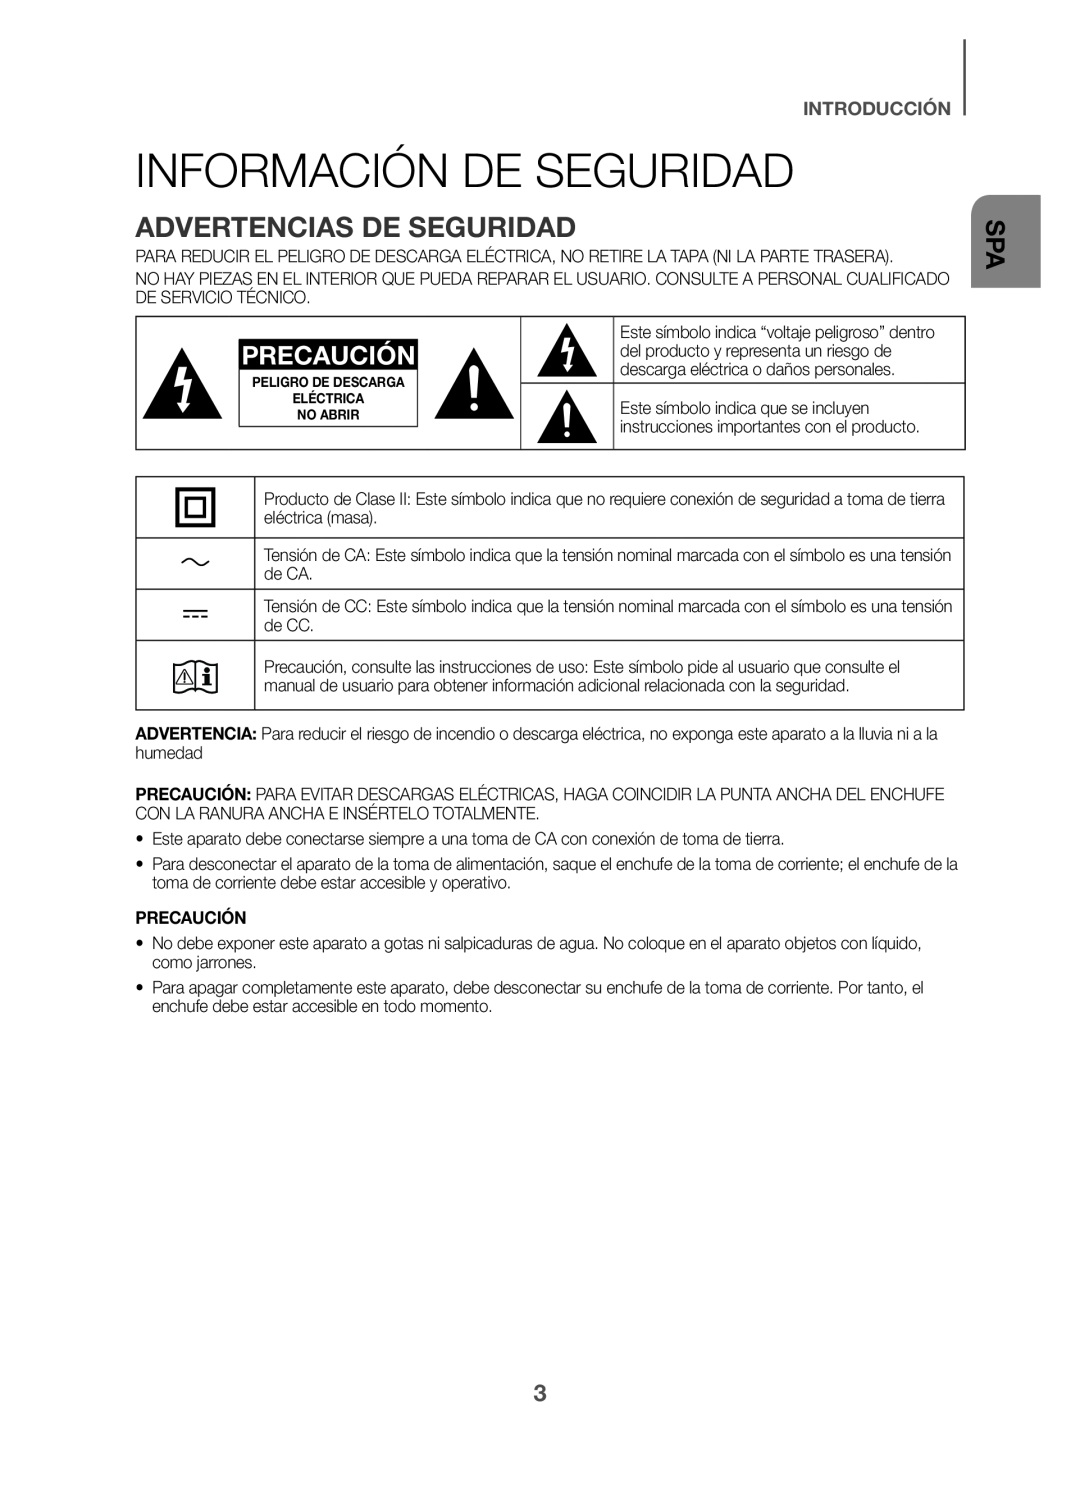 ADVERTENCIAS DE SEGURIDAD Standard HW-K360